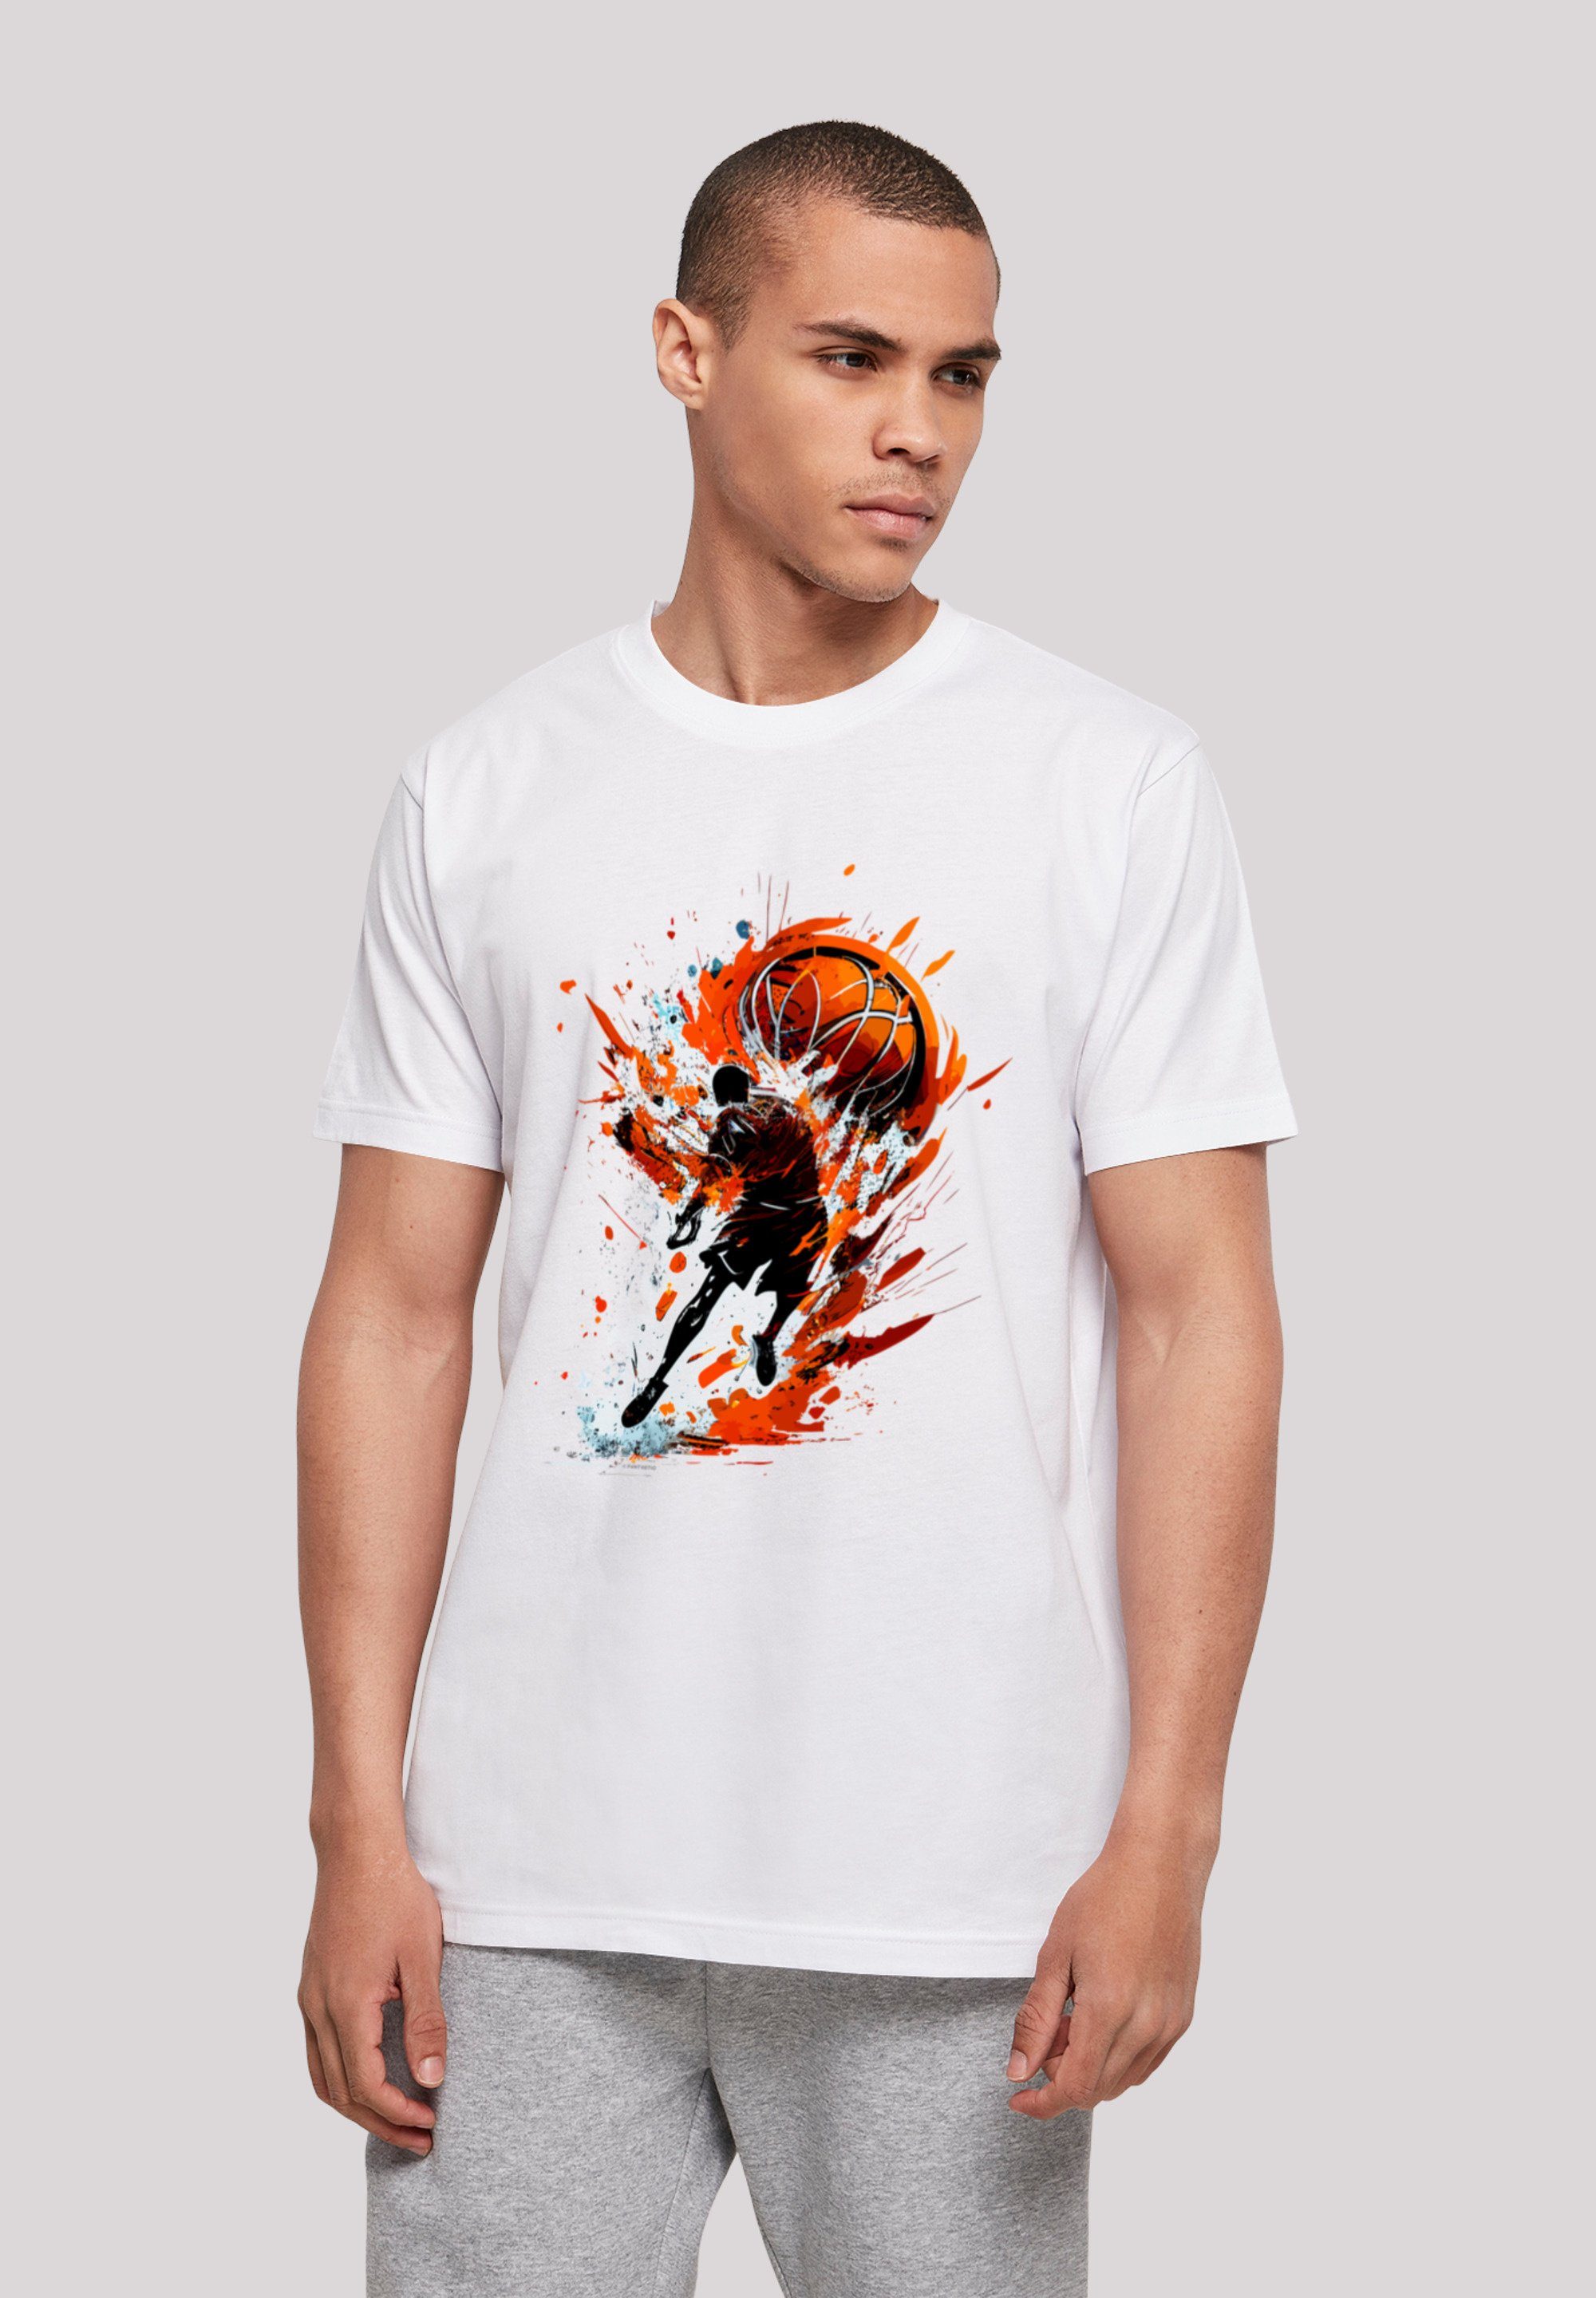 weicher mit hohem Sport UNISEX Print, T-Shirt Tragekomfort Baumwollstoff F4NT4STIC Splash Basketball Sehr